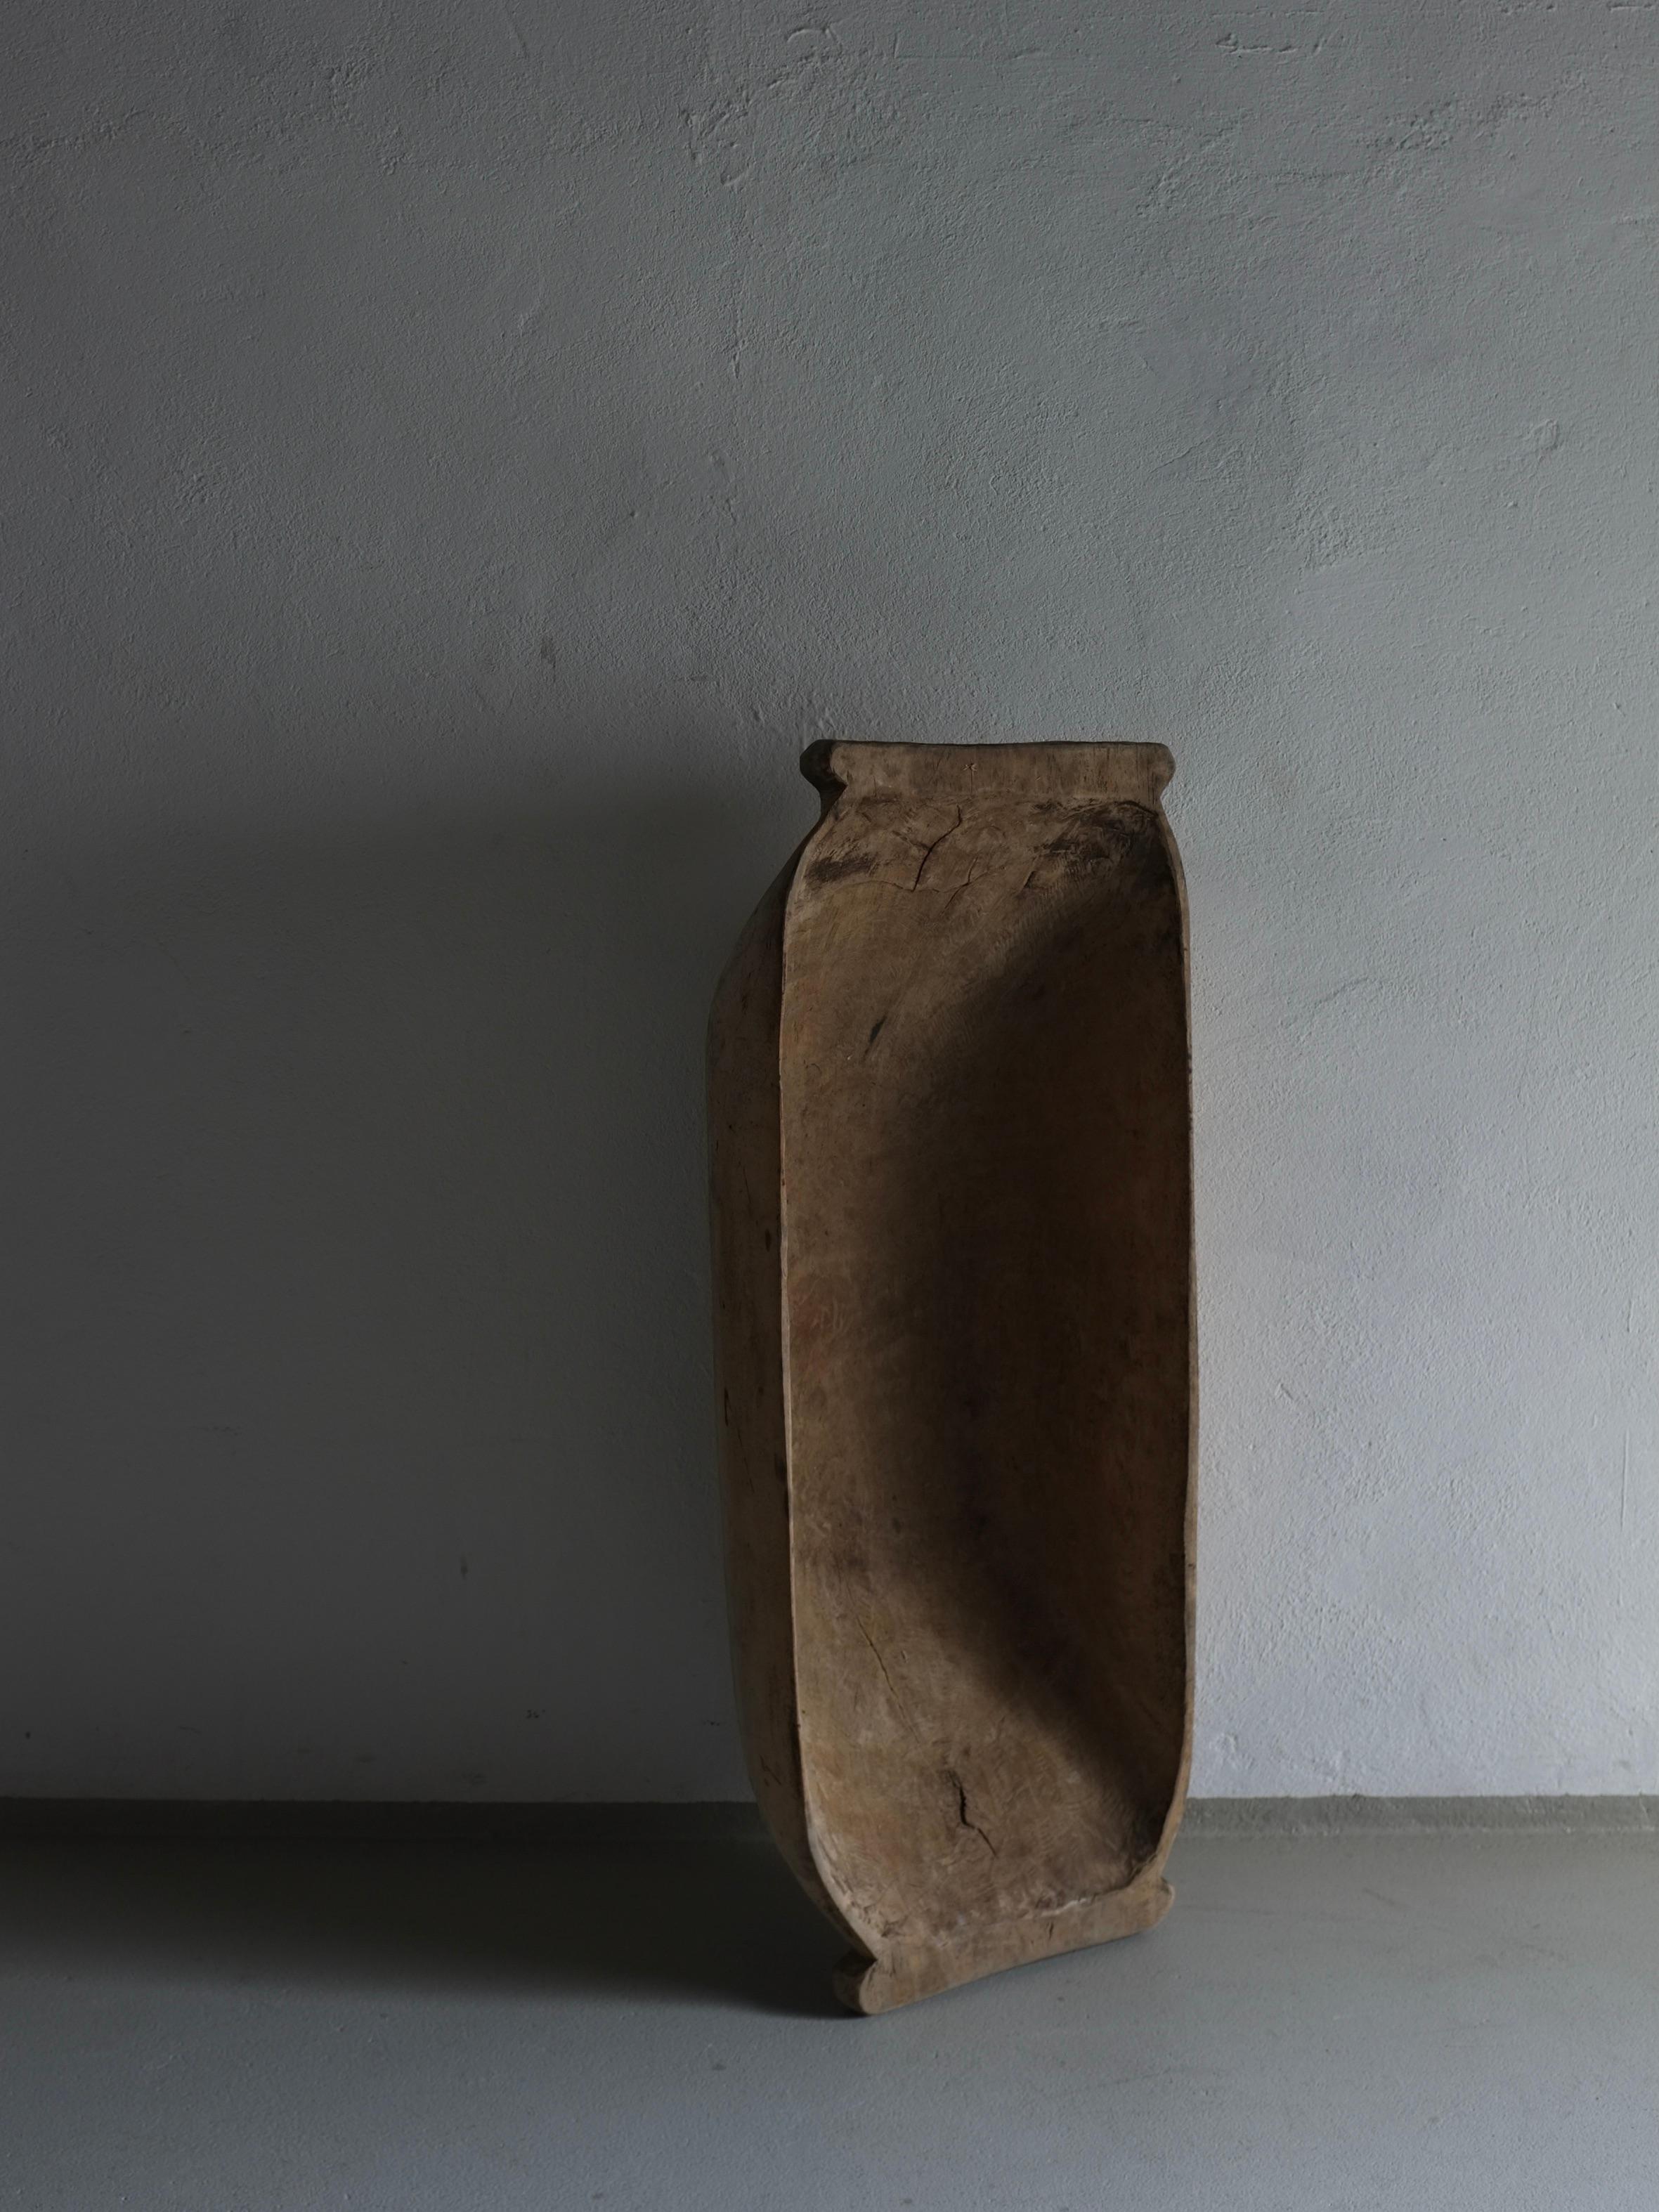 Antike rustikale geschnitzte Holzschale (#5) mit einer schönen Patina. Schwerer Gegenstand.

Zusätzliche Informationen:
Herkunft: Lettland
Abmessungen: B 99 cm x T 40 cm x H 22,5 cm